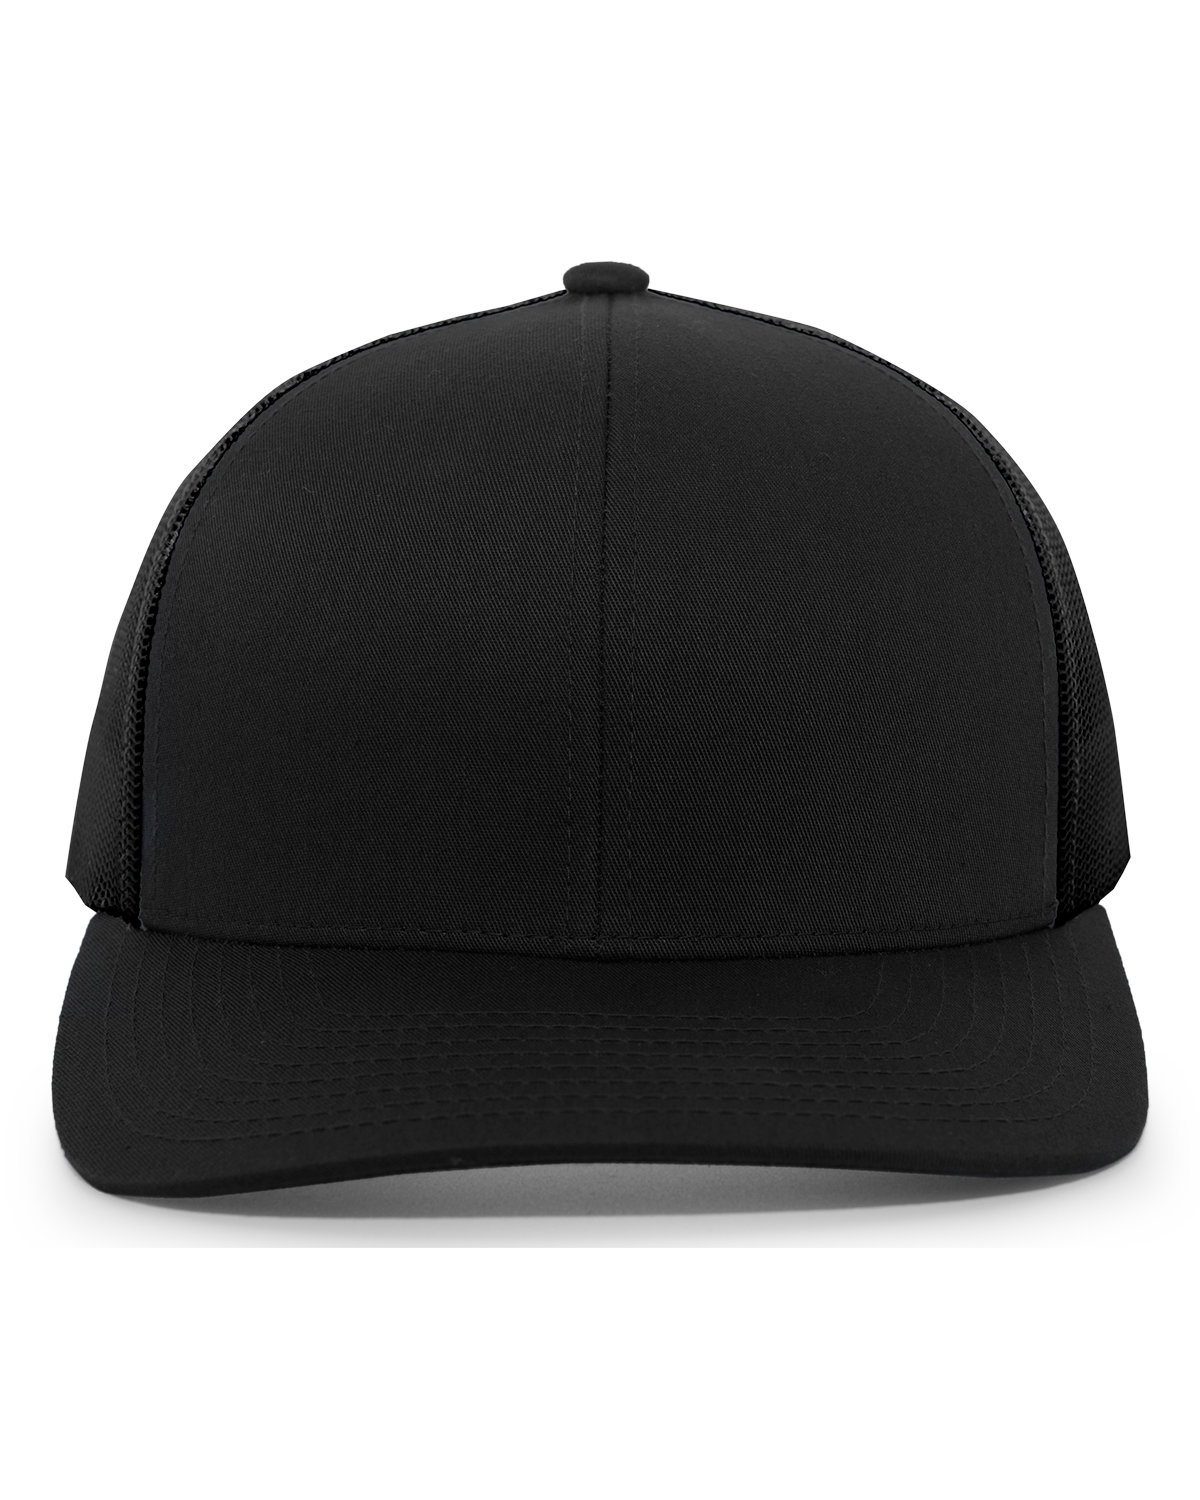 Pacific Headwear Trucker Snapback Hat BLACK 